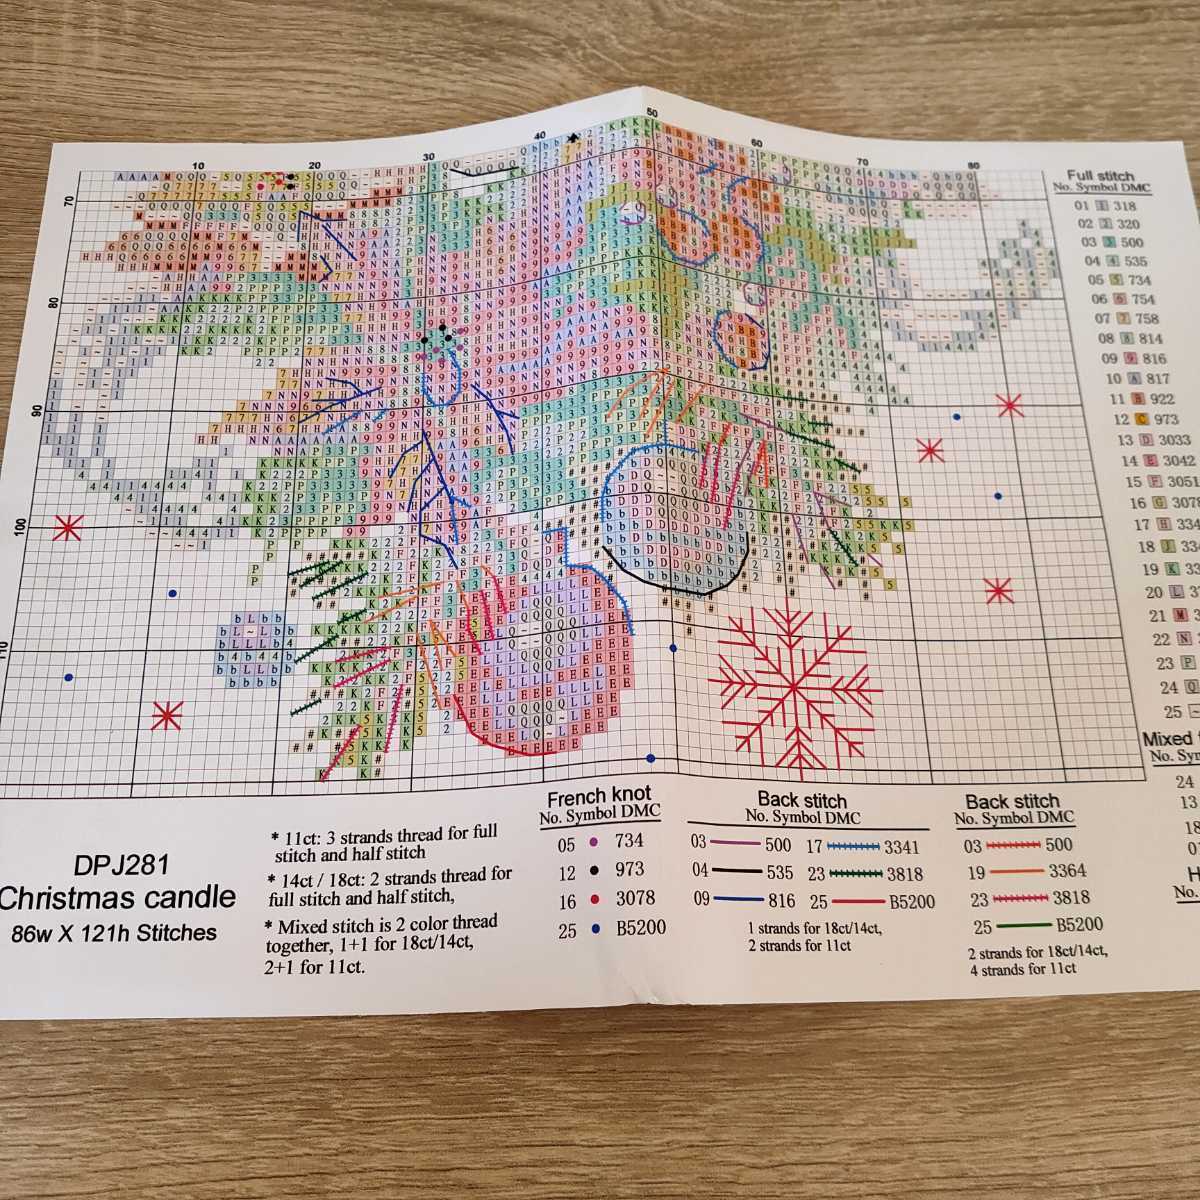 クロスステッチキット クリスマスキャンドル(ベージュ) 14CT 21×29cm 図案印刷なし 刺繍